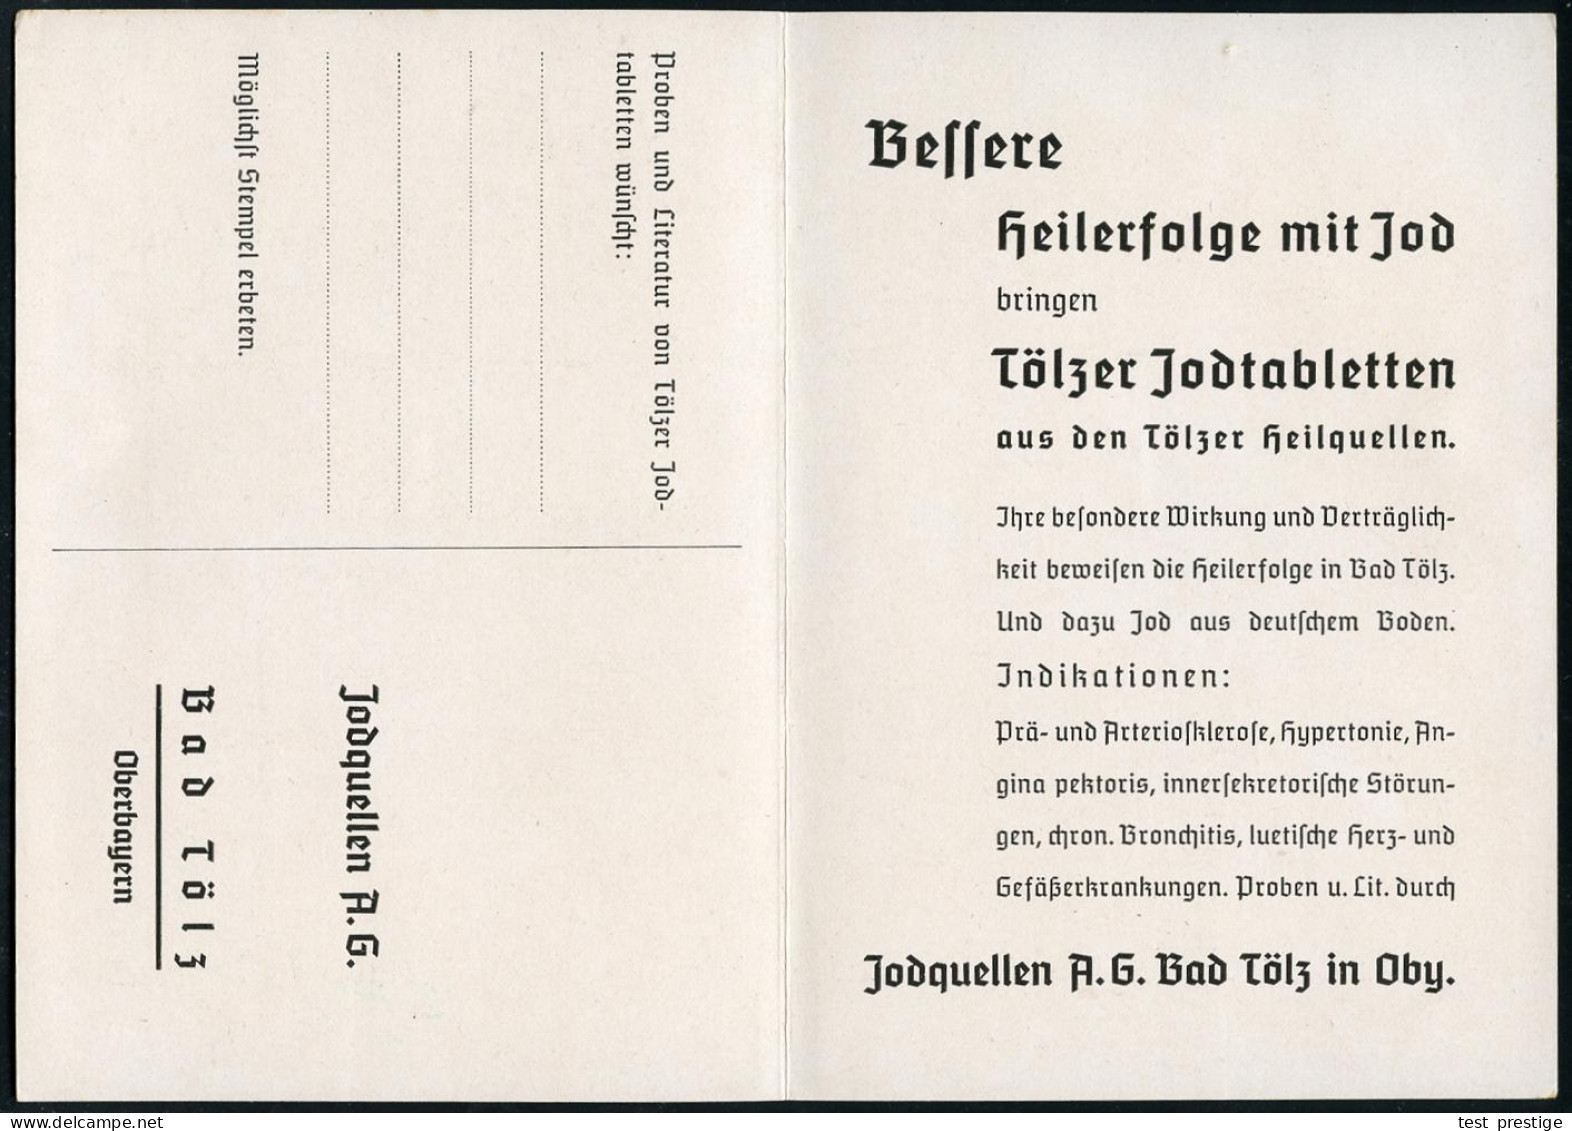 BAD TÖLZ/ *1*/ GEGEN/ ADERVER/ KALKUNG/ UND/ BLUTHOCHDRUCK../ KRANKENHEILER JODQUELLEN AG/ JOD-BAD TÖLZ.. 1936 (13.1.) S - Pharmazie